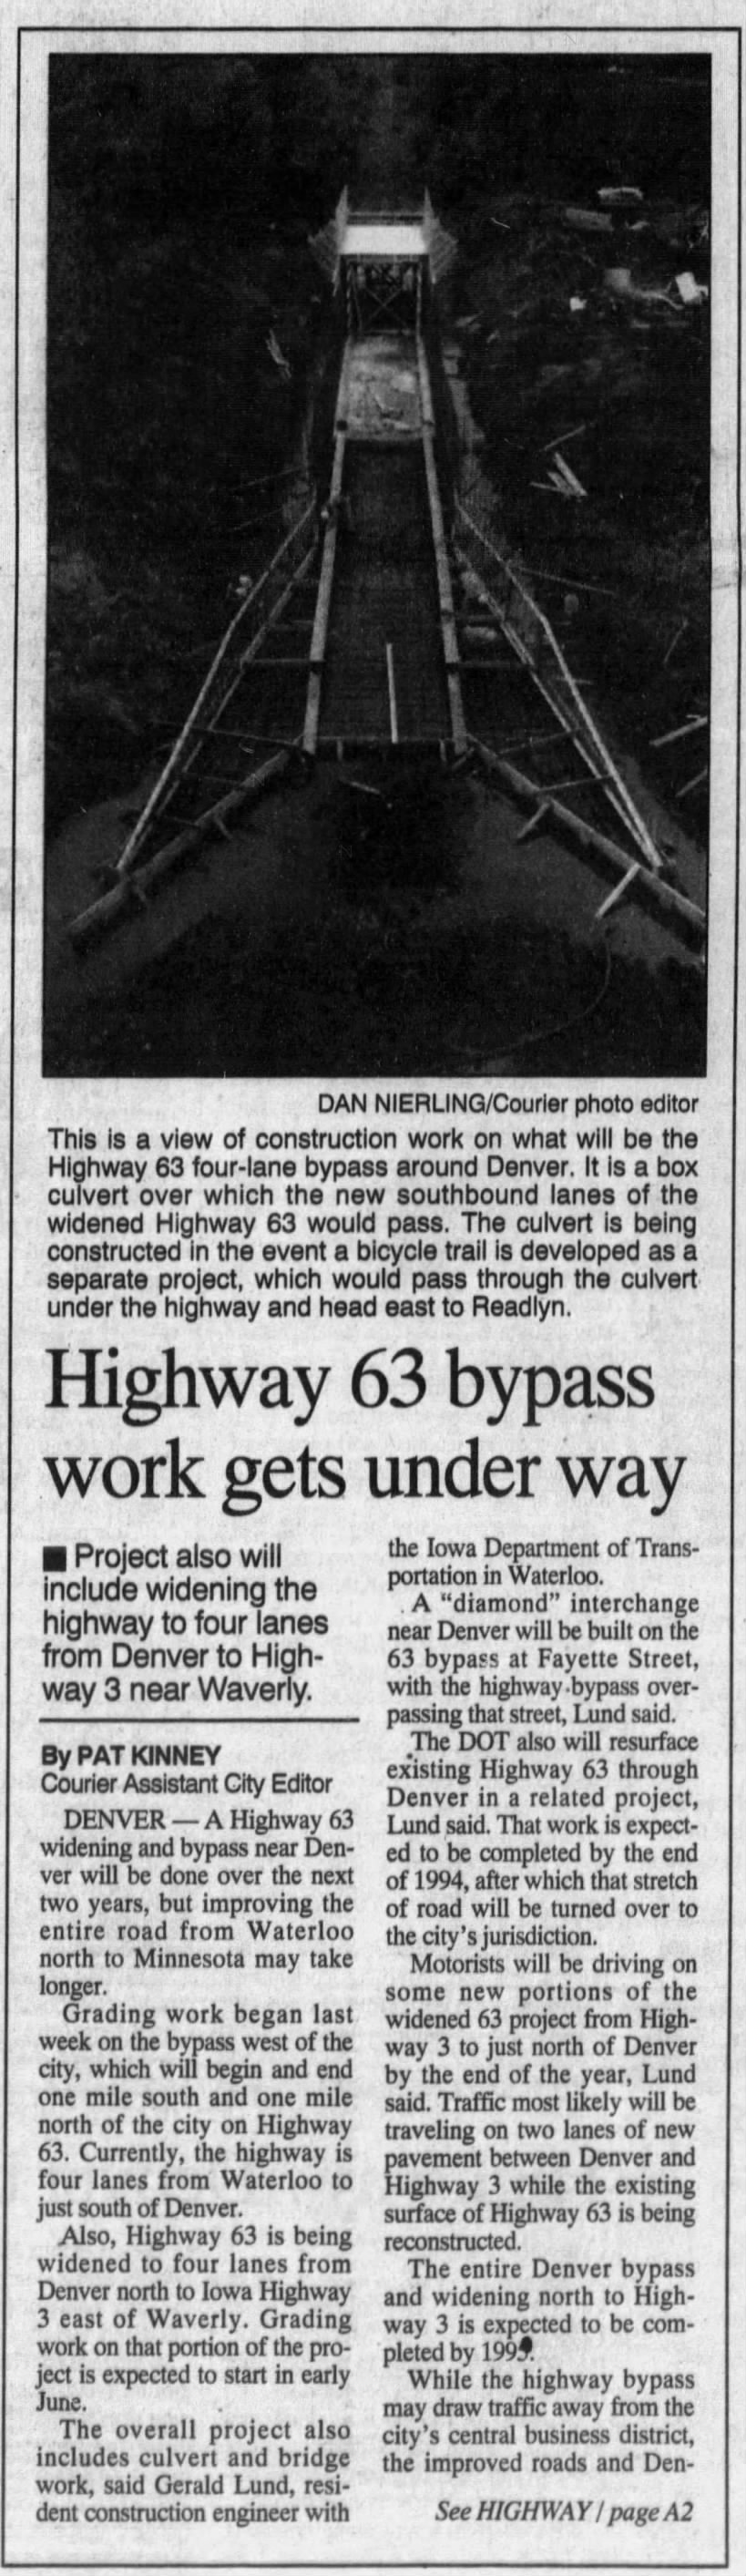 Highway 63 bypass work gets under way